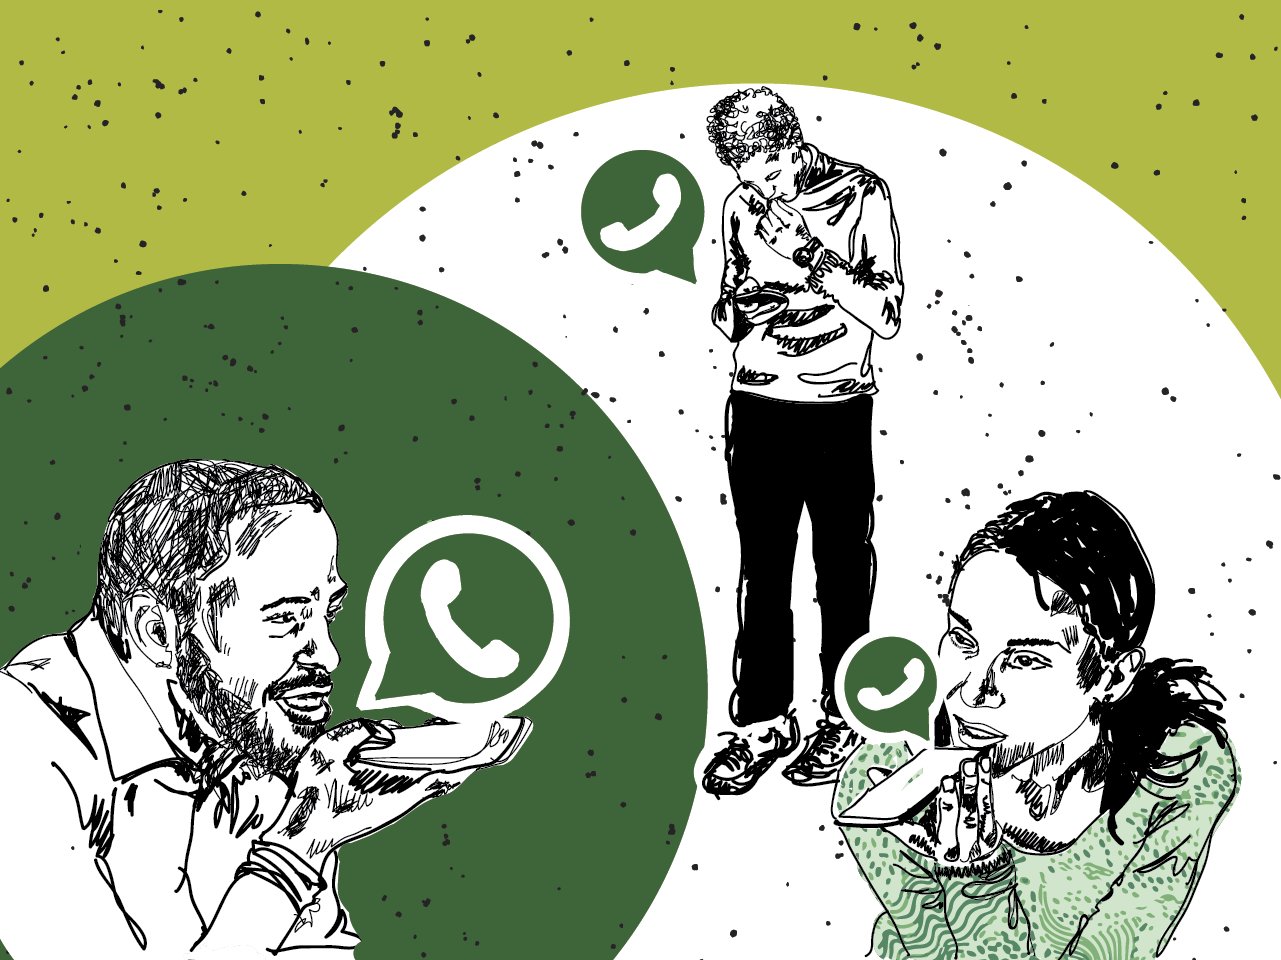 WhatsApp permite sair de grupos silenciosamente em novo teste - TecMundo